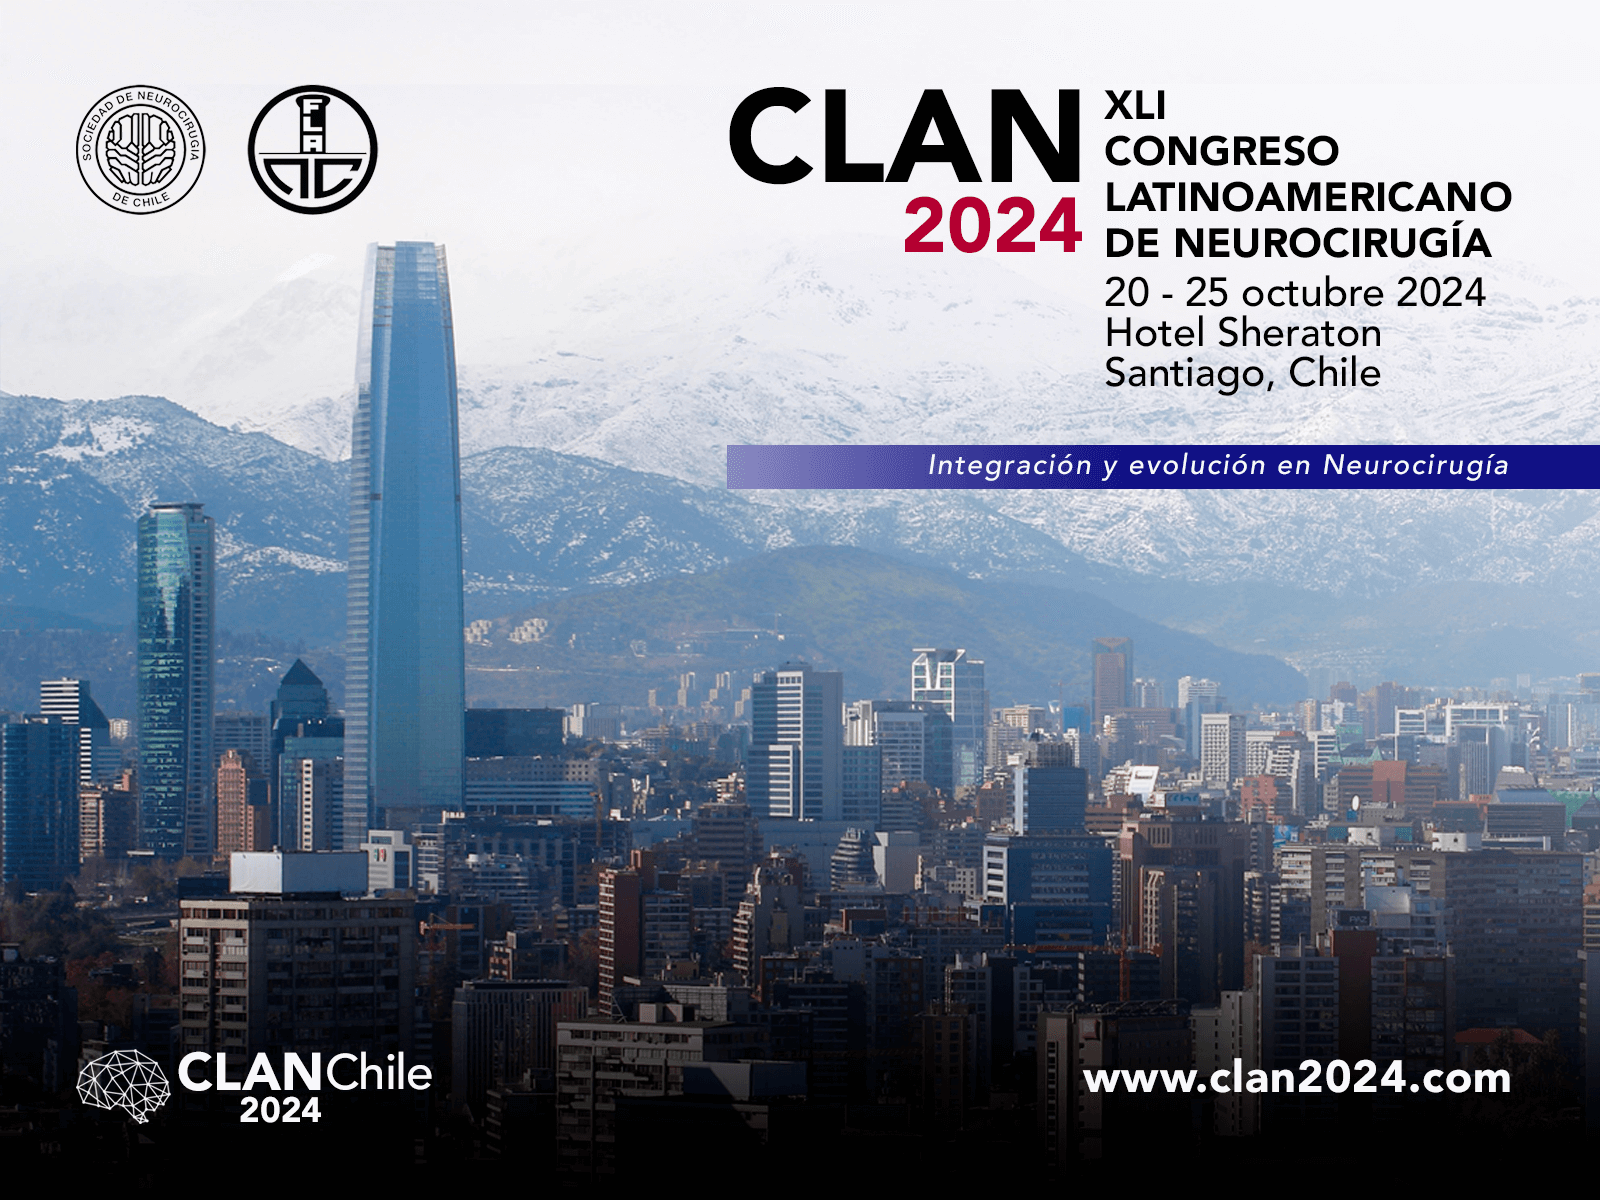 CLAN 2024